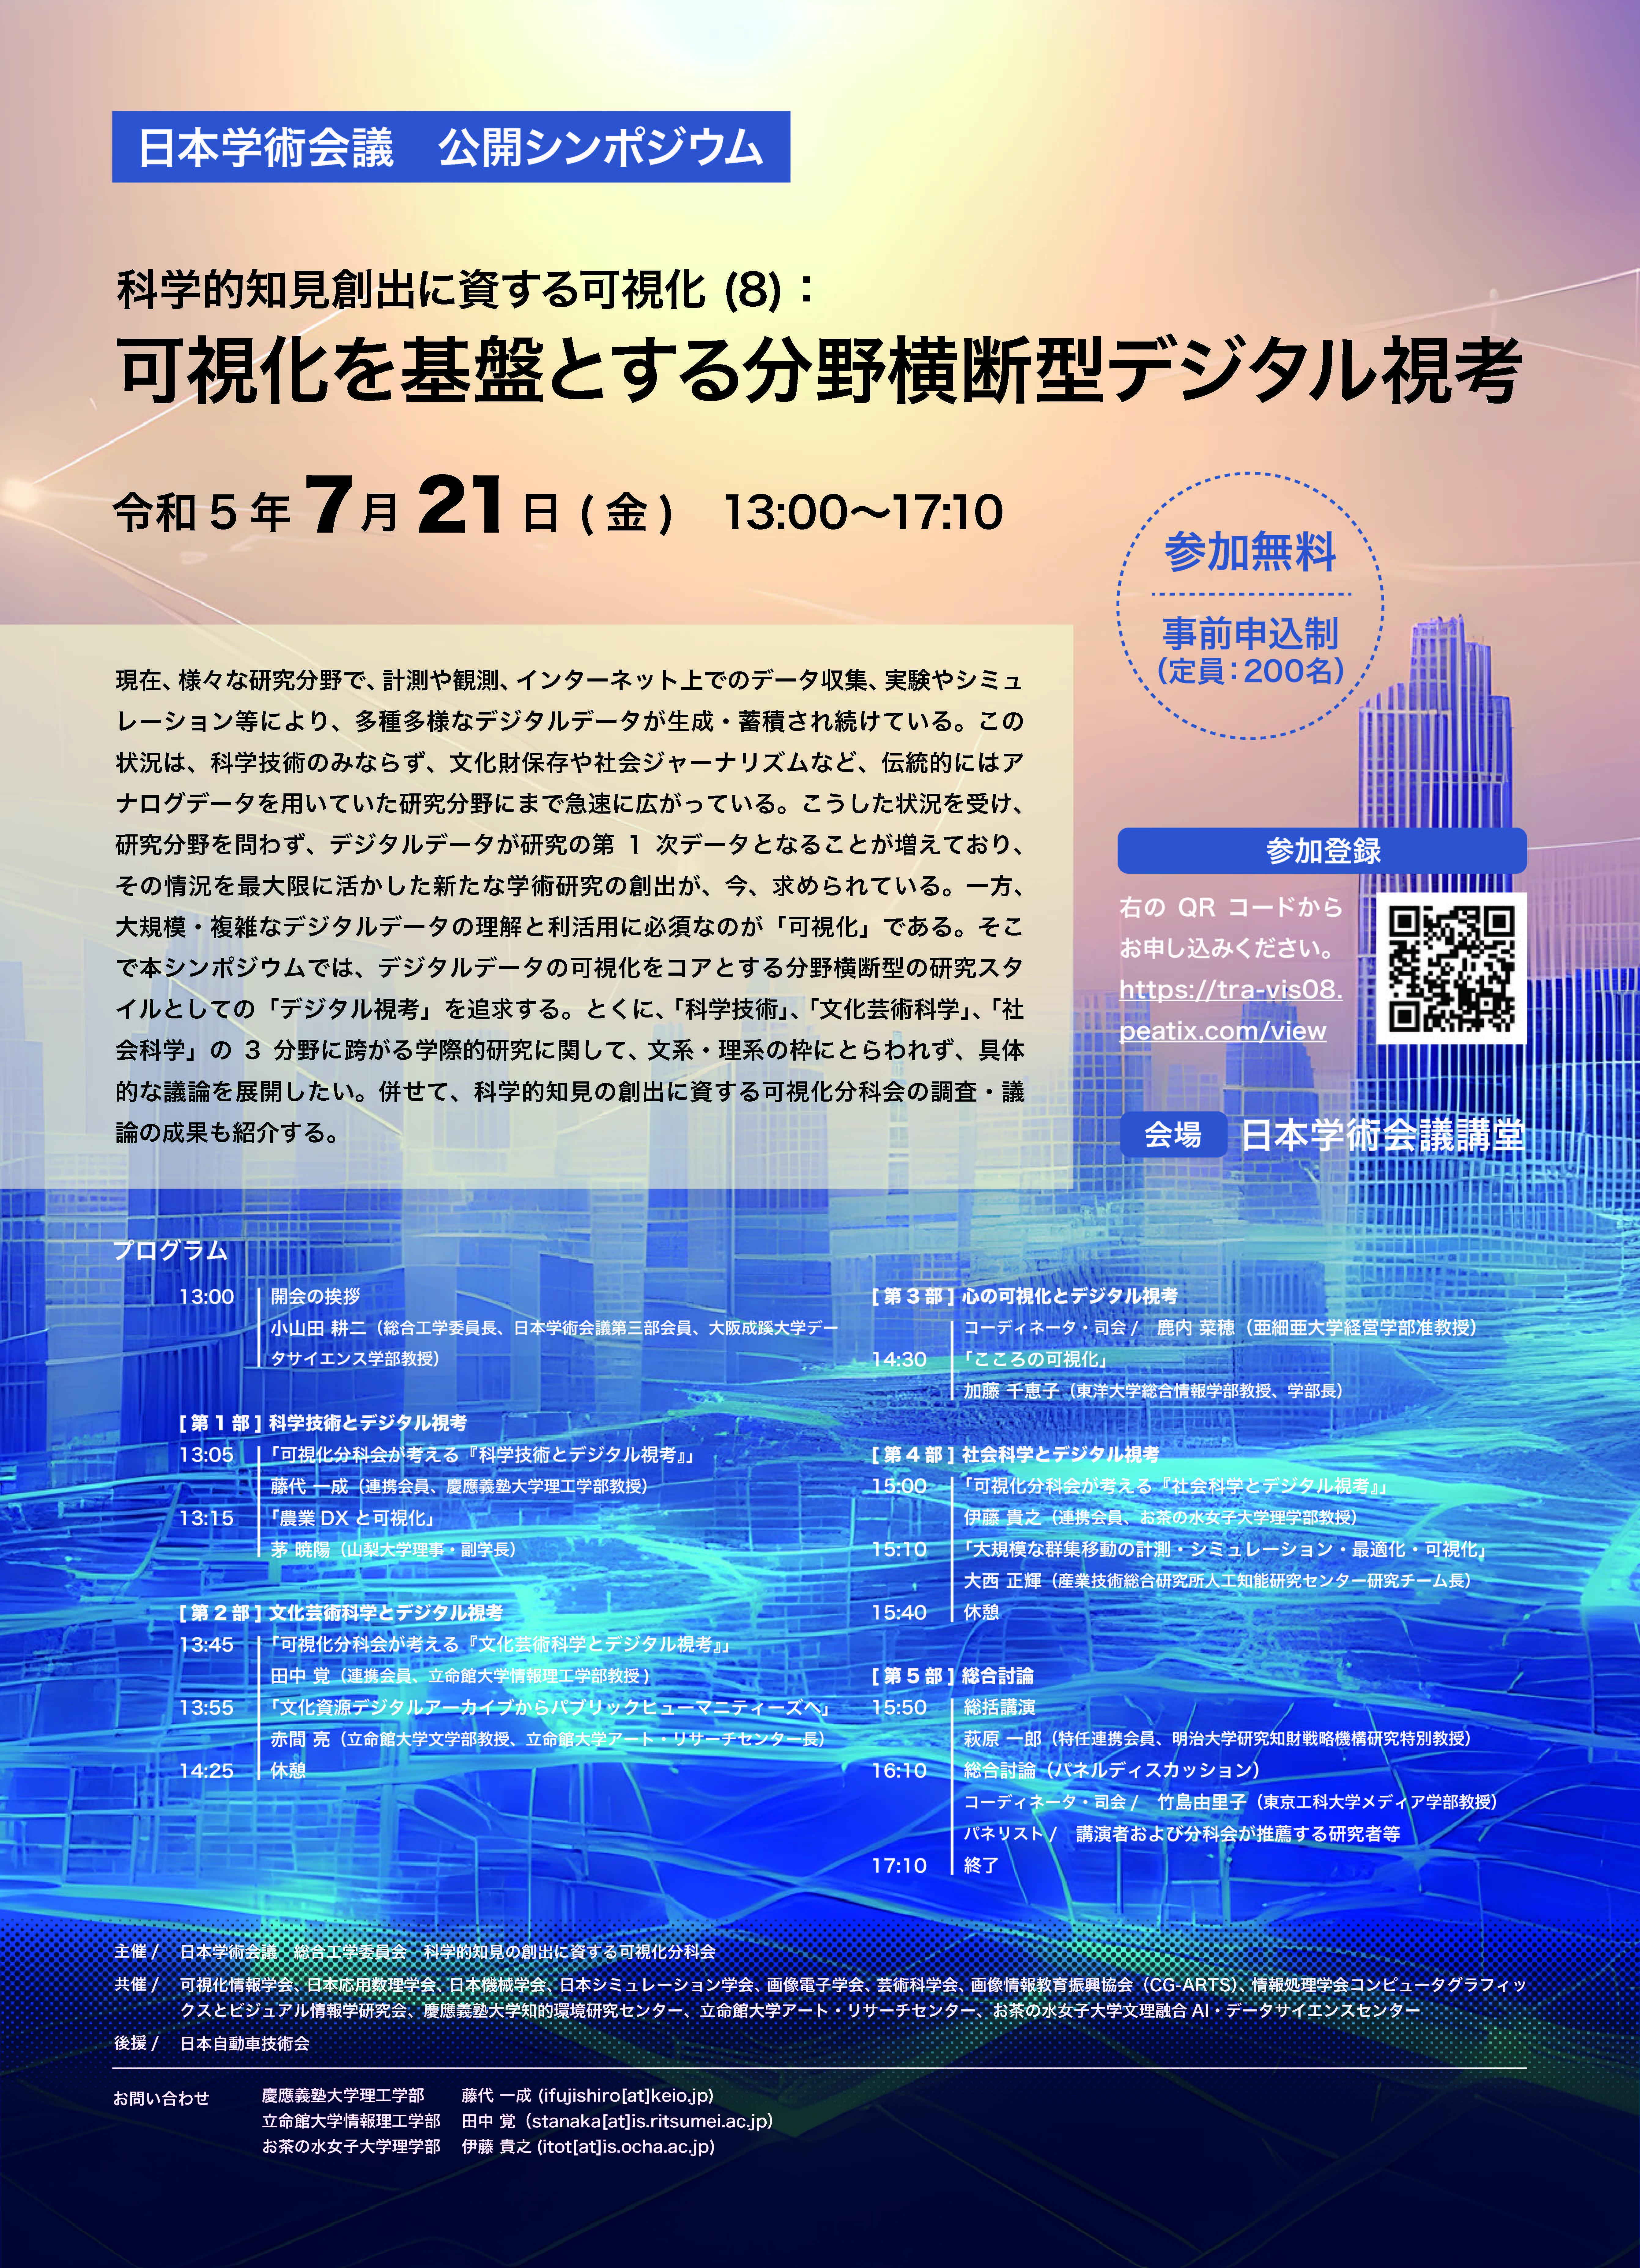 日本学術会議公開シンポジウム「科学的知見創出に資する可視化 (8)：可視化を基盤とする分野横断型デジタル視考」